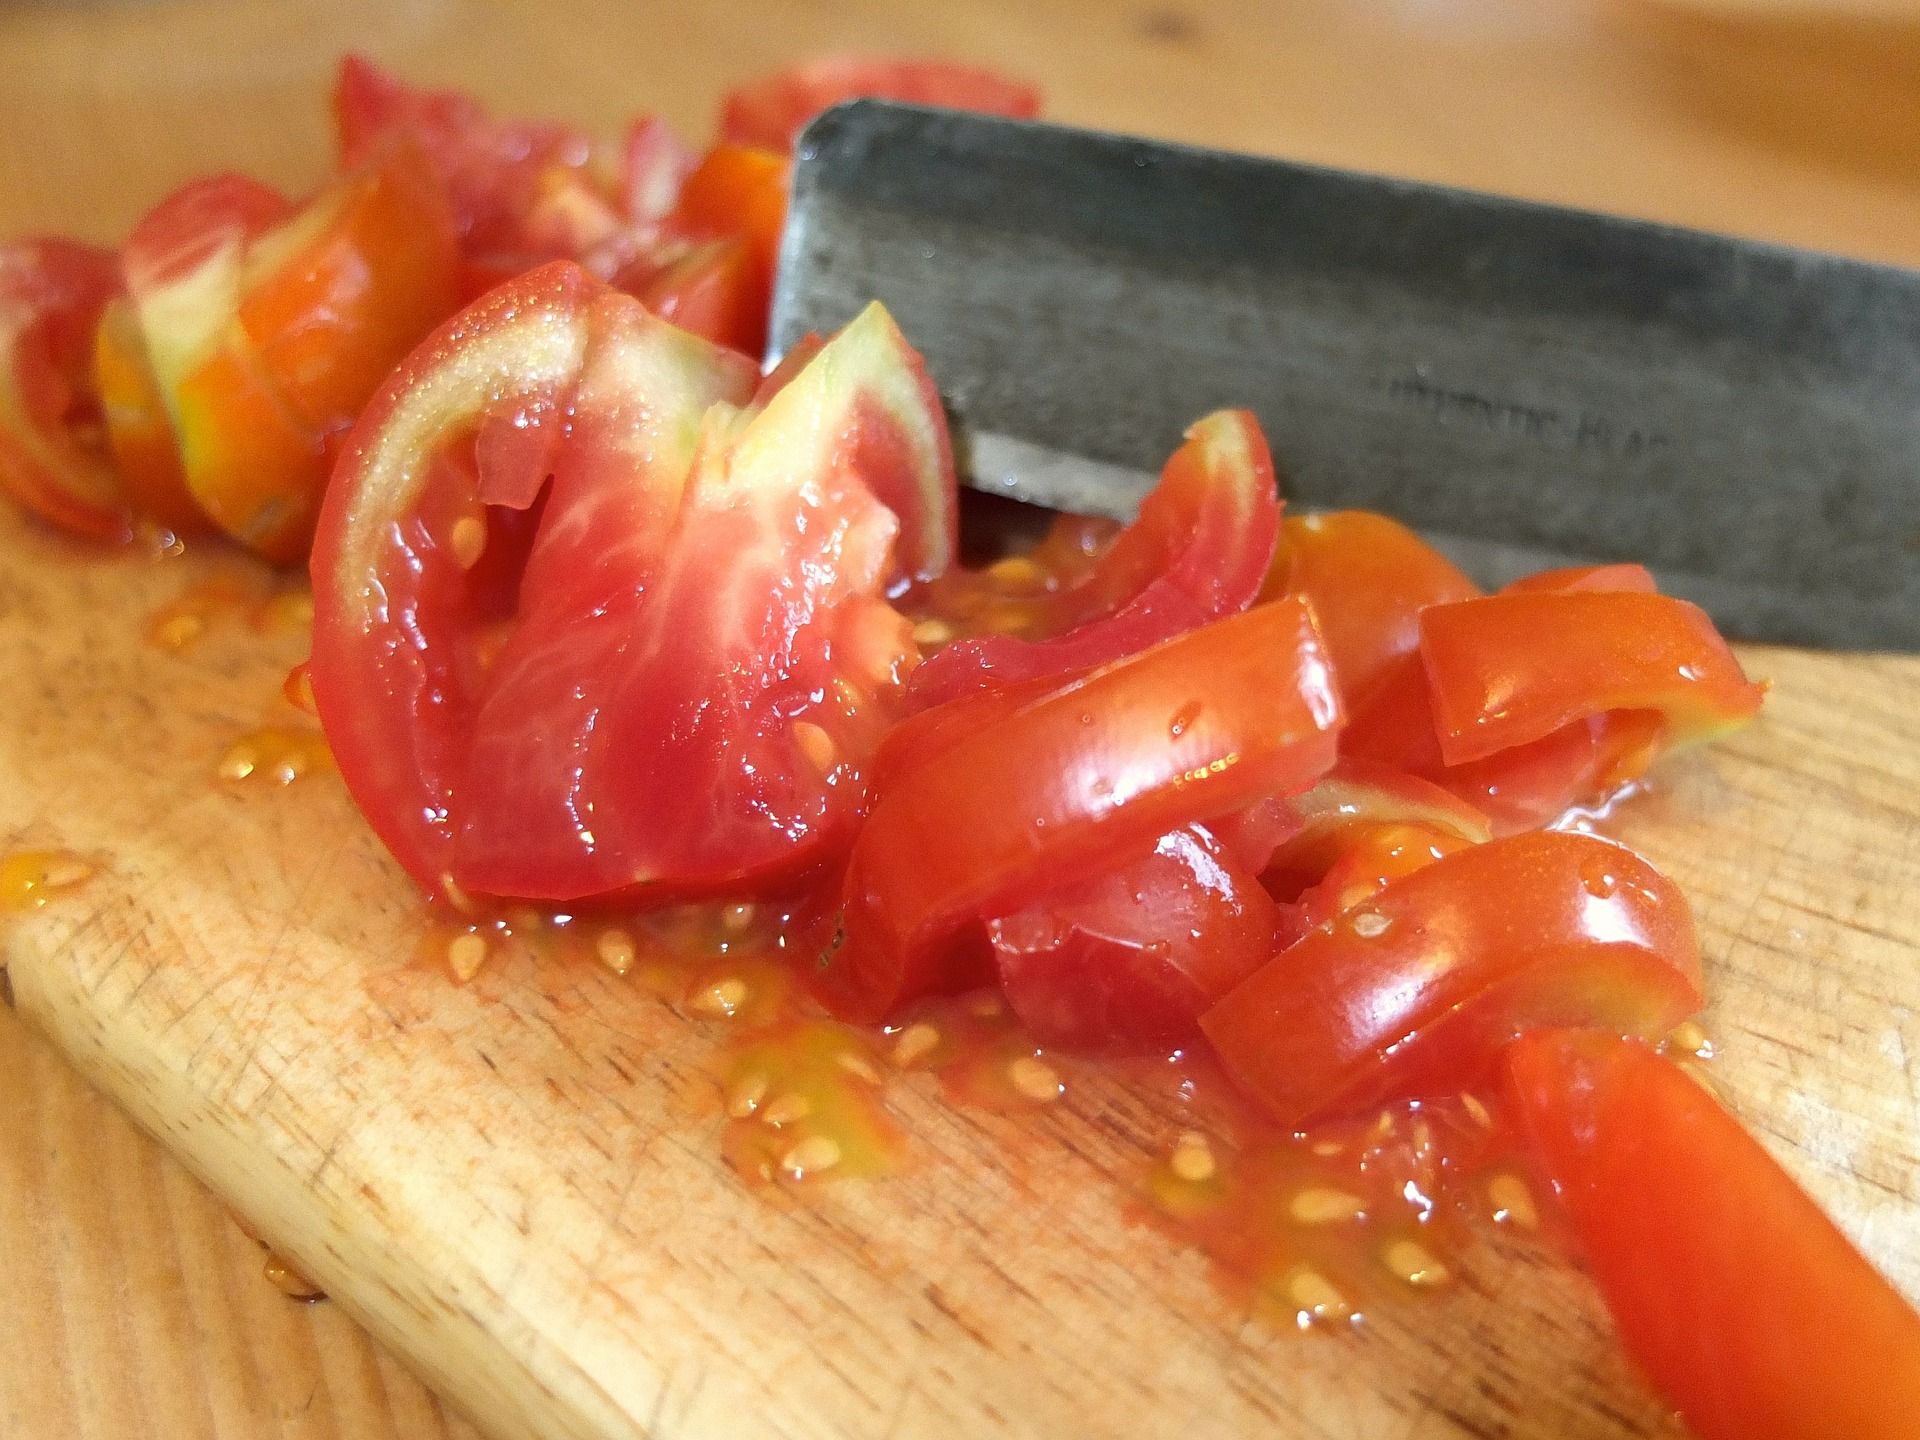 Tomatensamen auf Brett